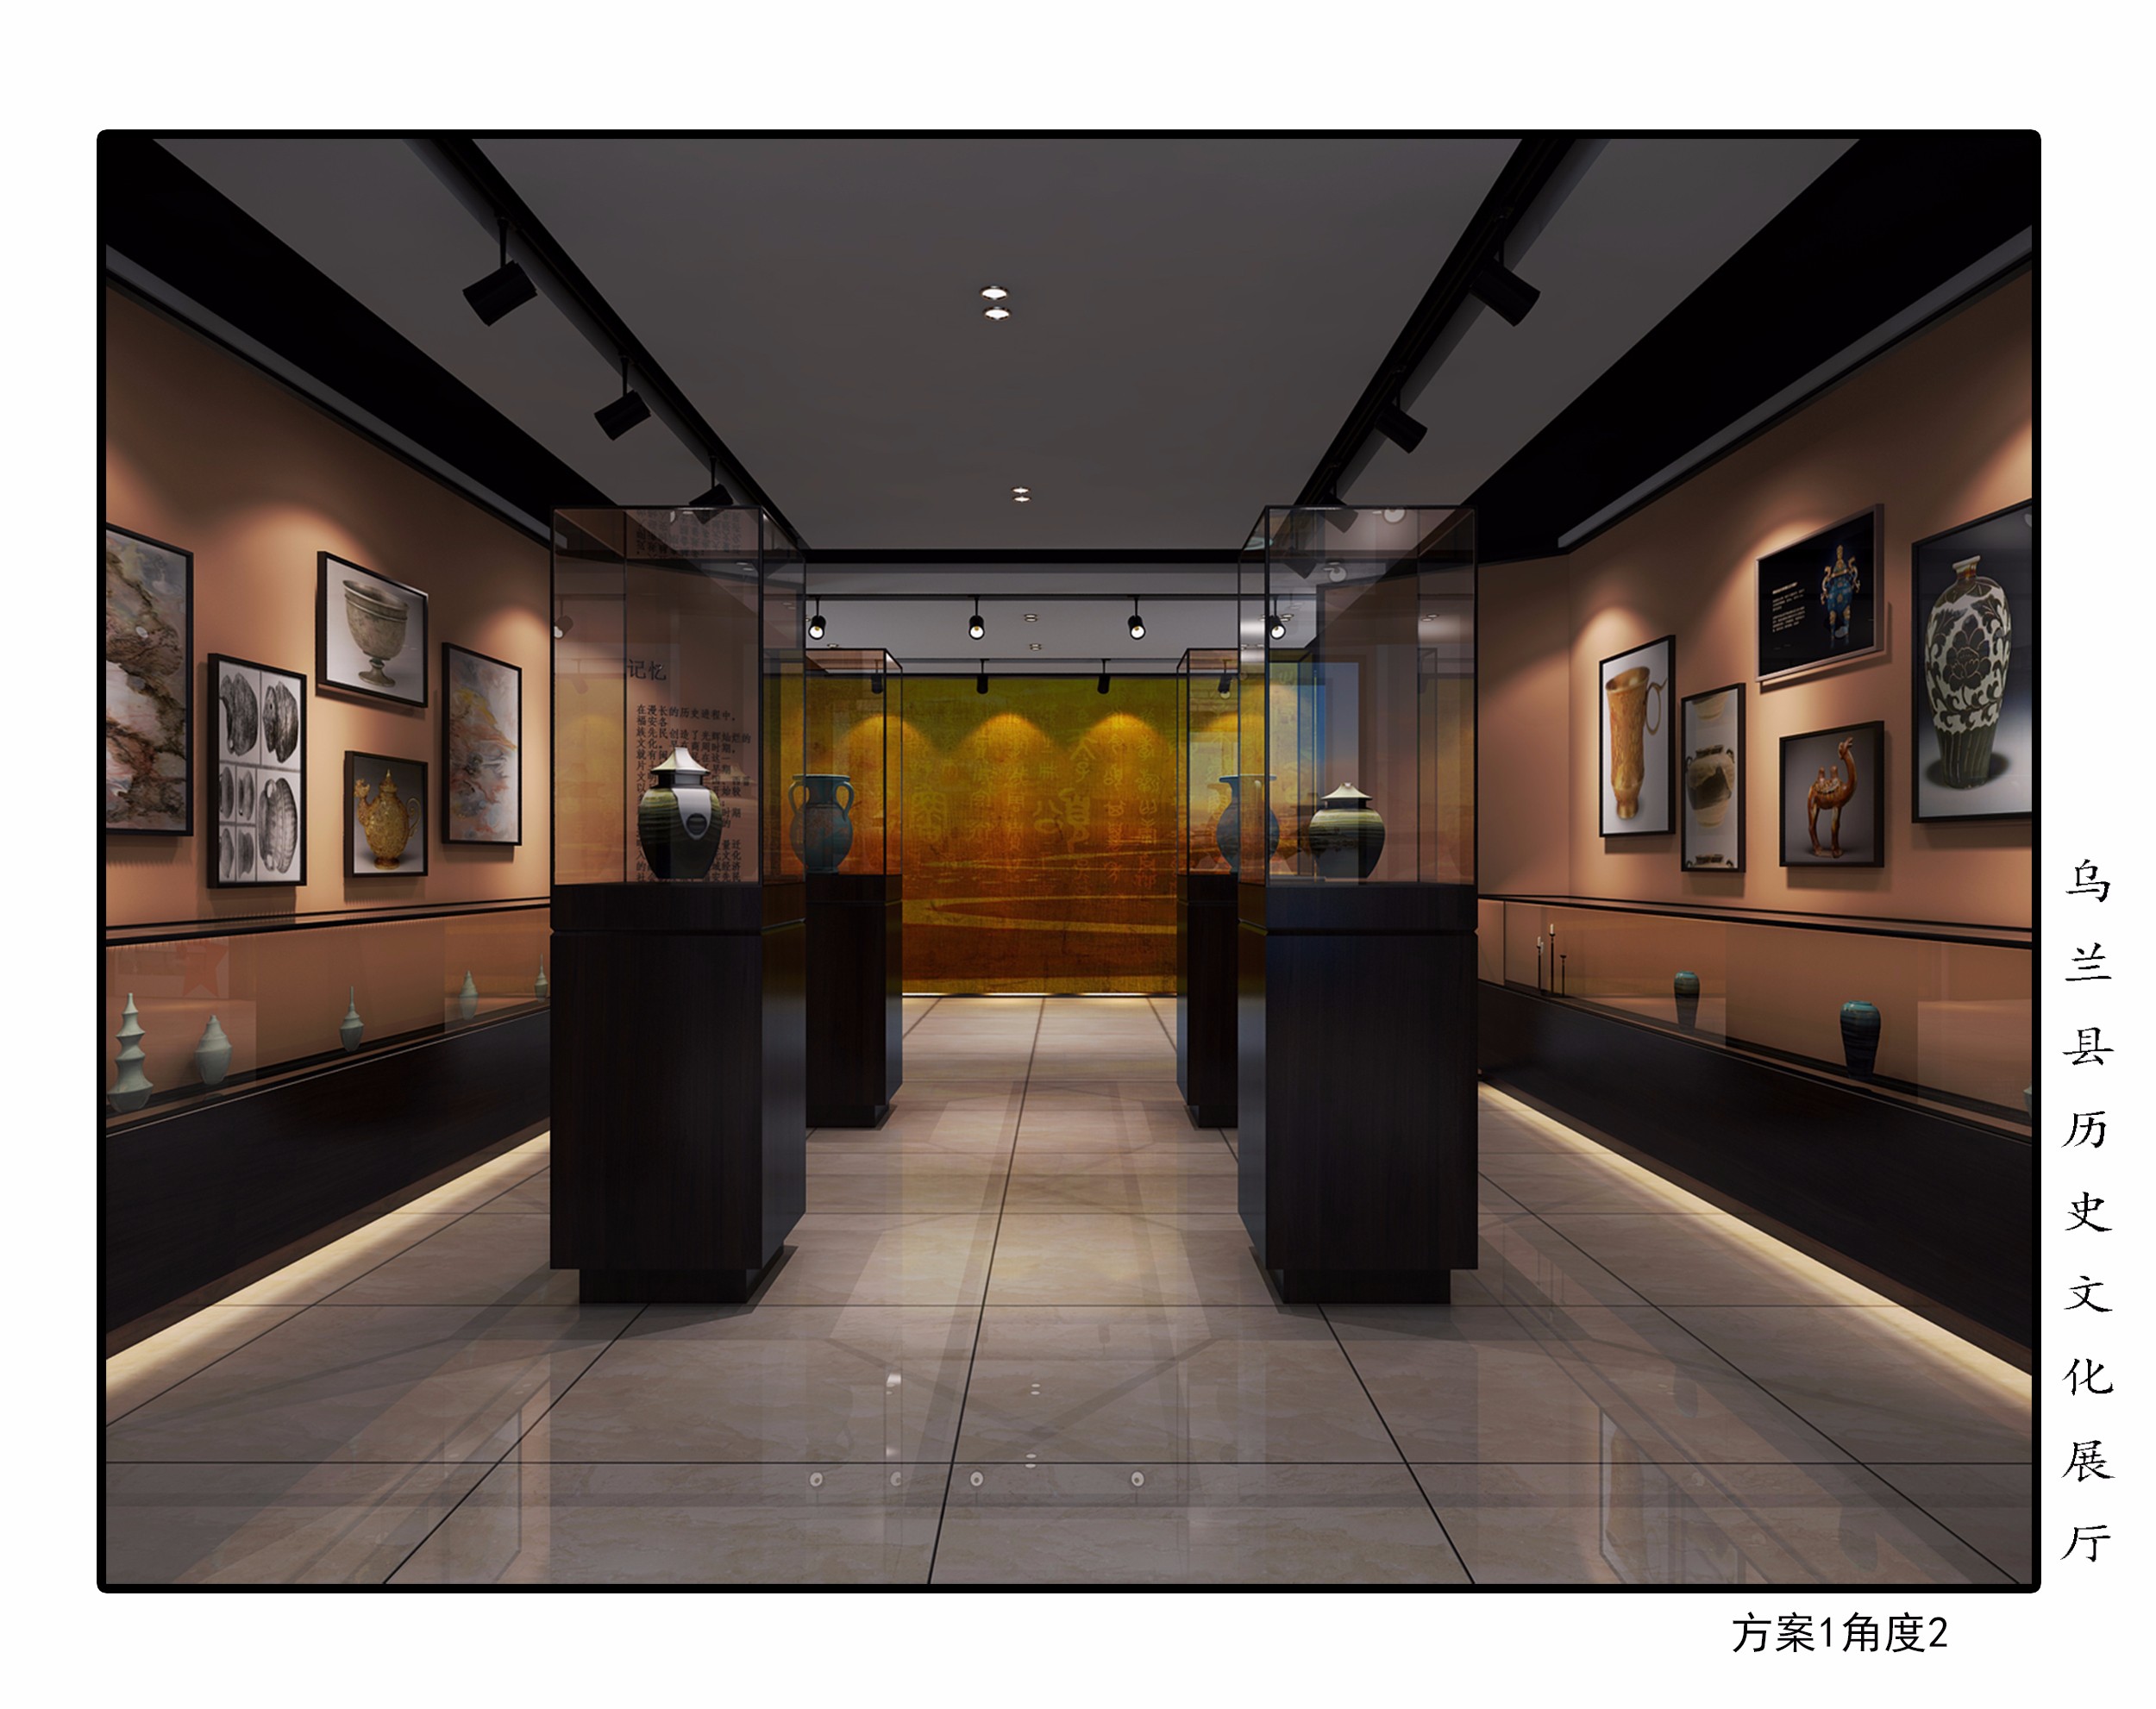 历史文化展厅 - 效果图交流区-建e室内设计网